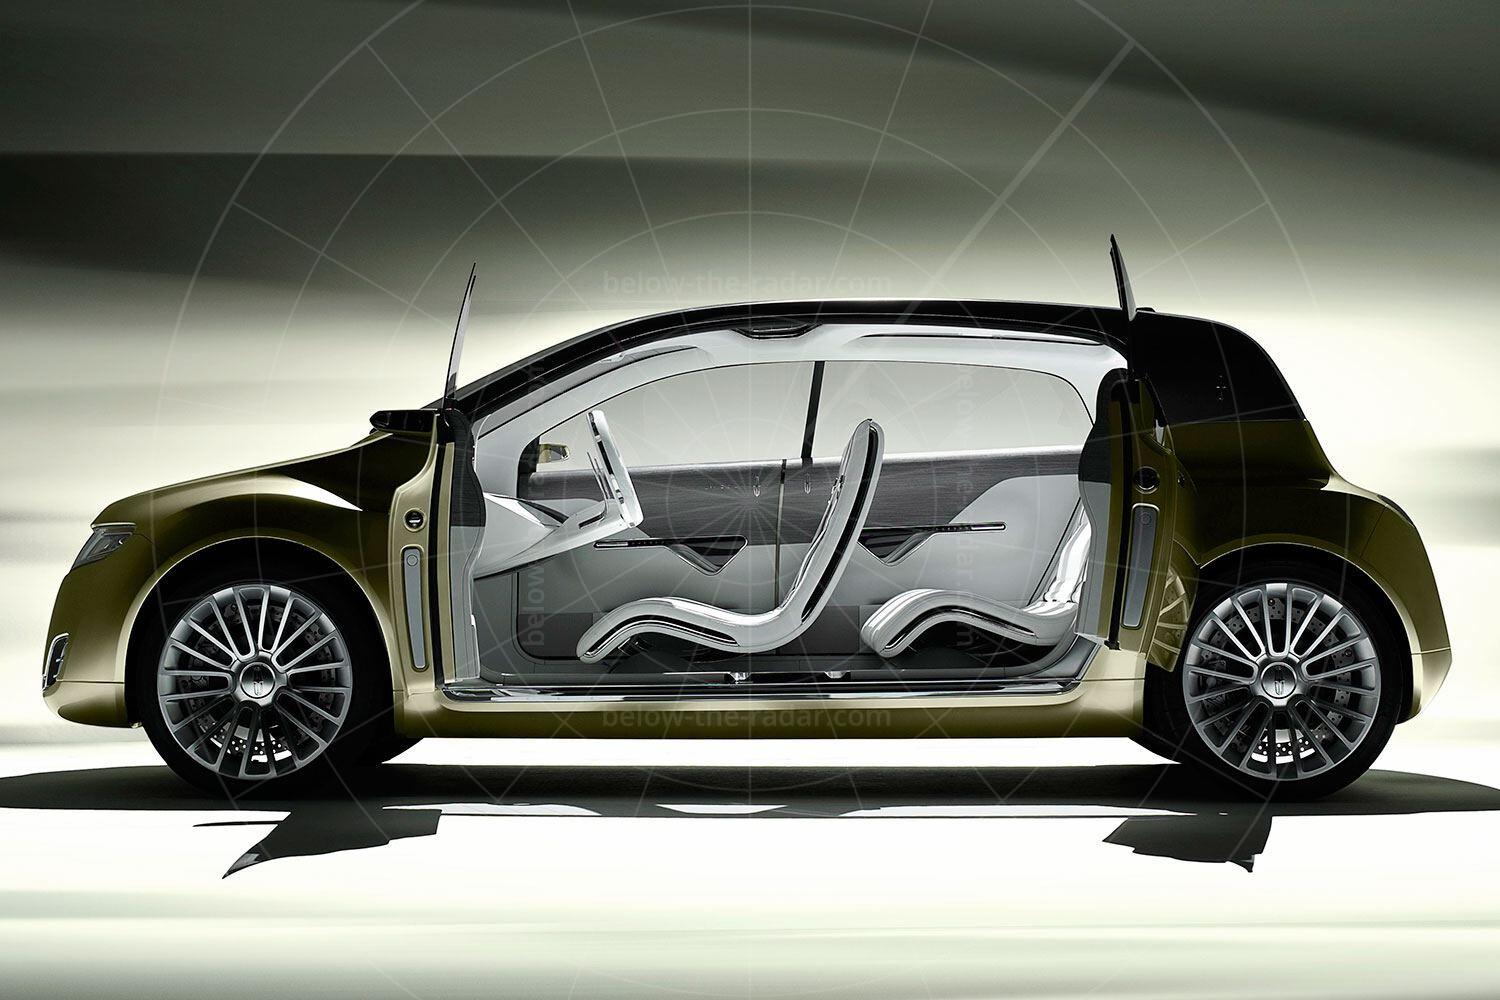 Lincoln C Concept interior Pic: Lincoln | Lincoln C concept interior